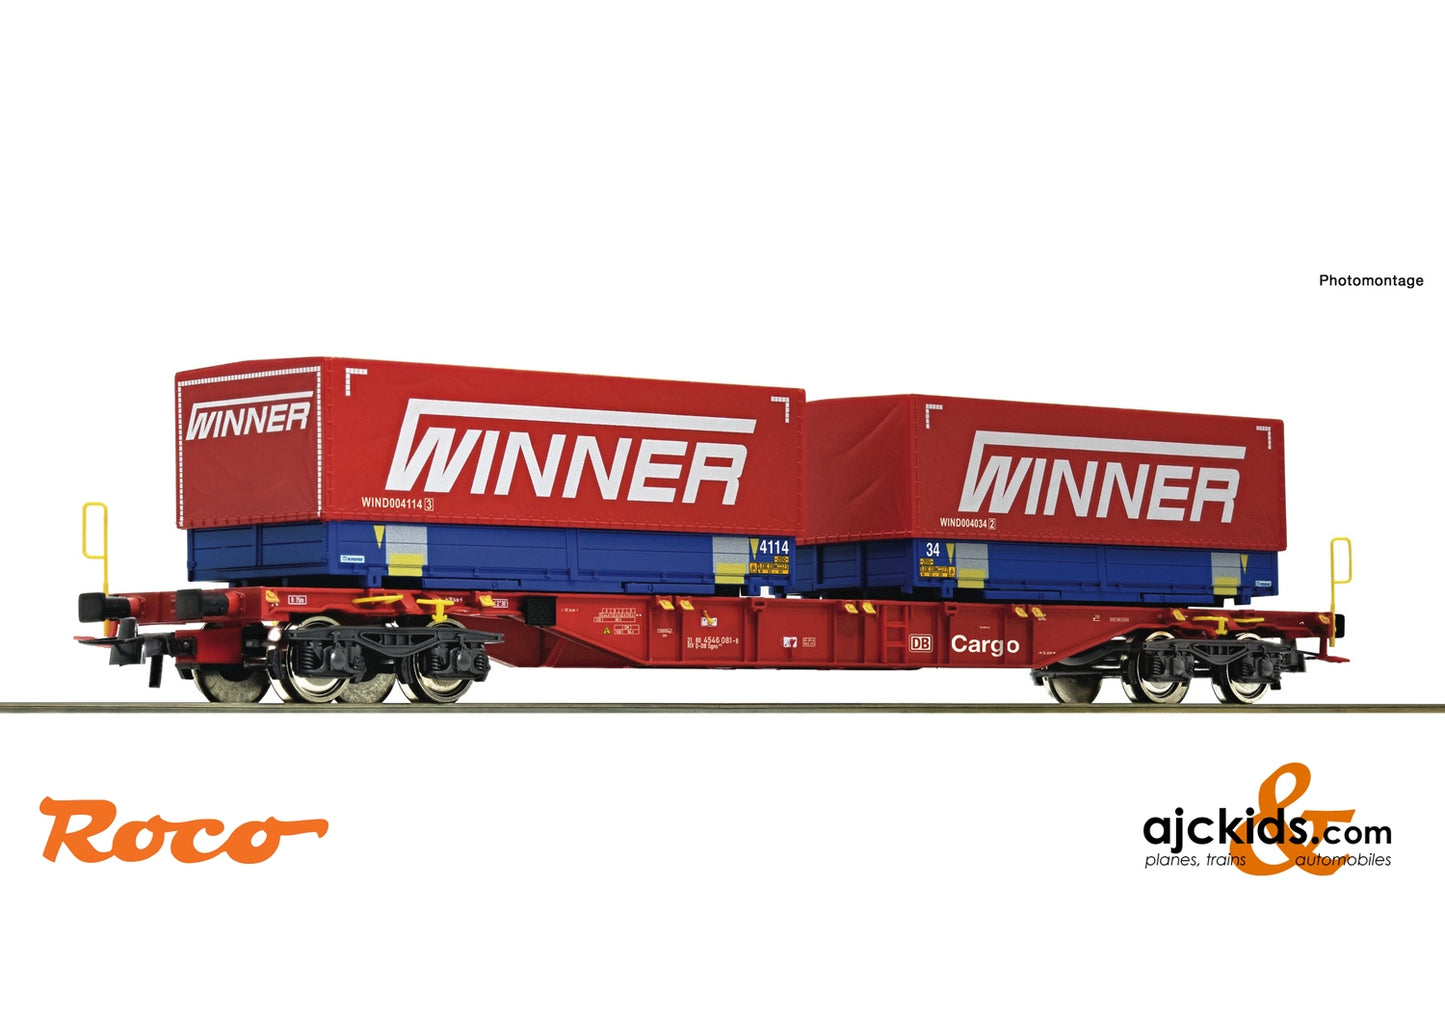 Roco 75893 - Container carrier wagon + Winner Wechselpritschen #7 Display 75886